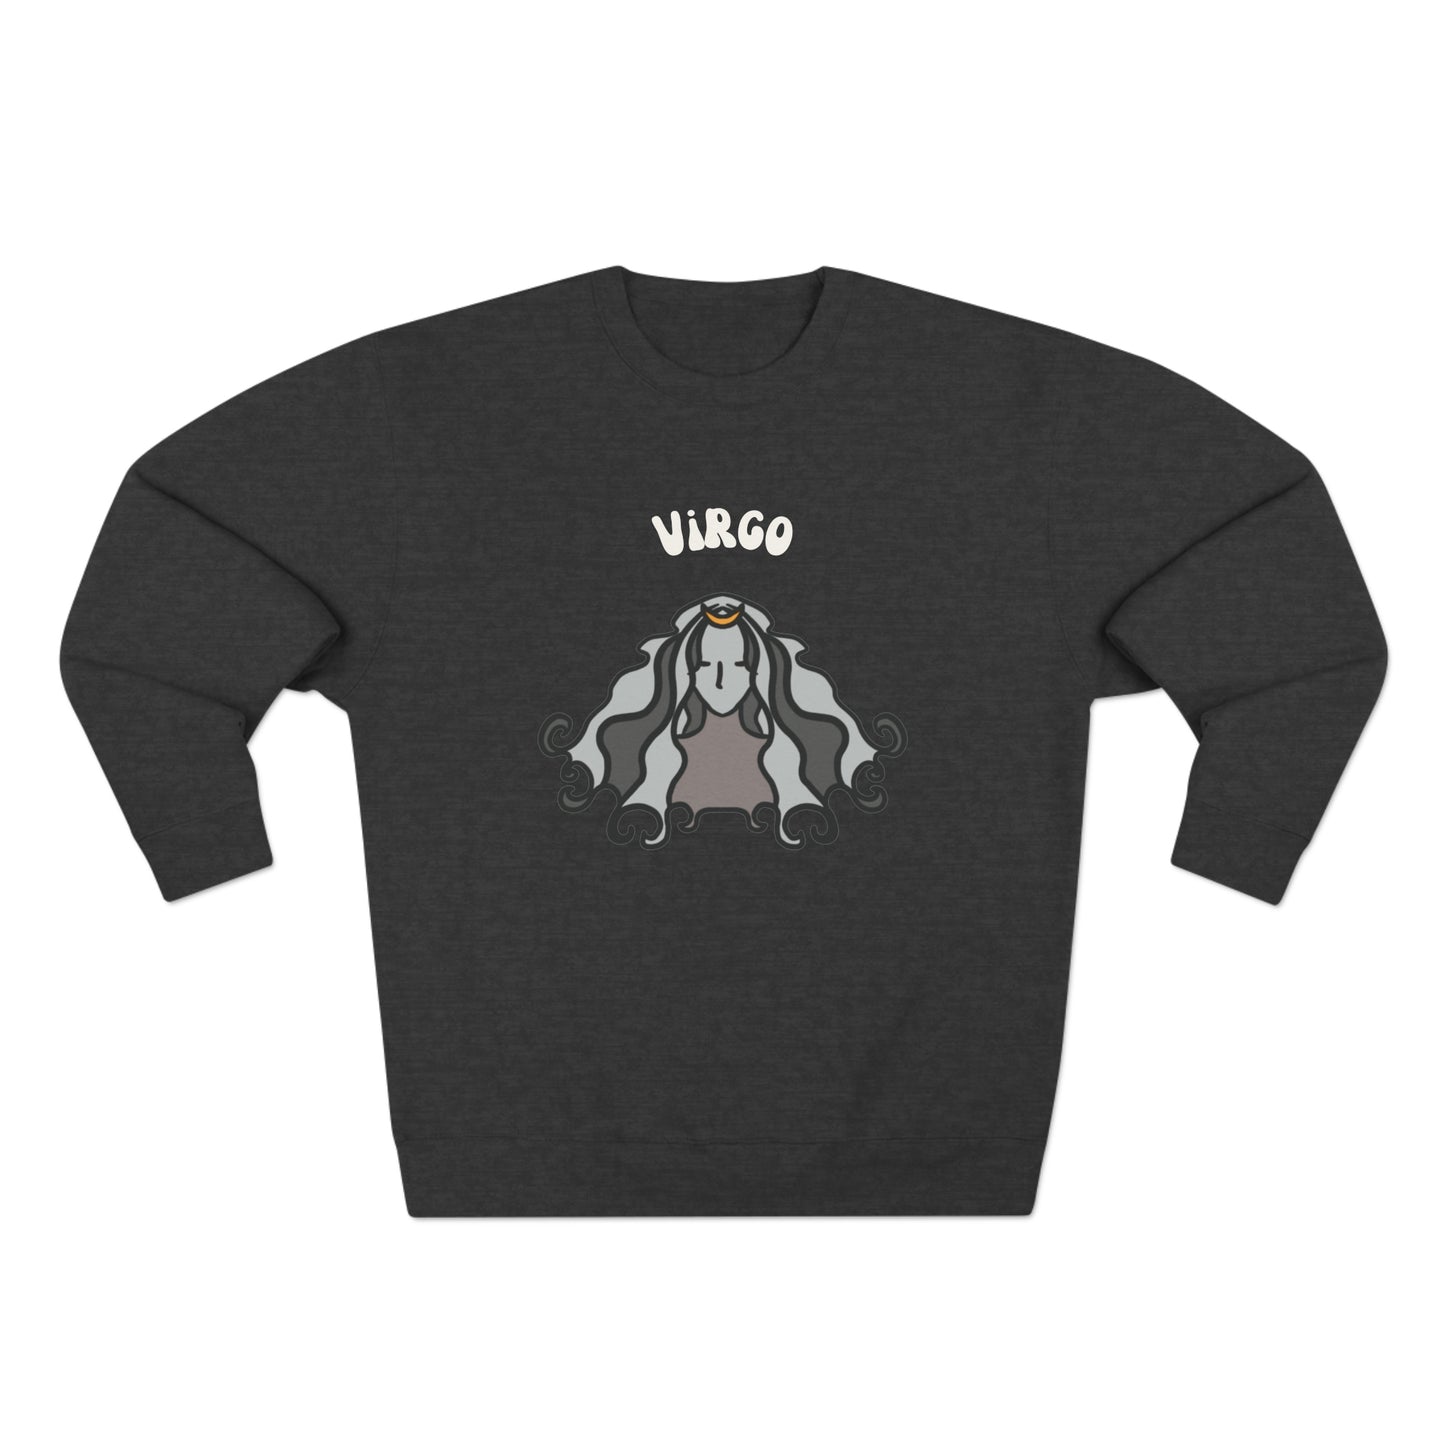 Virgo Premium Sweatshirt